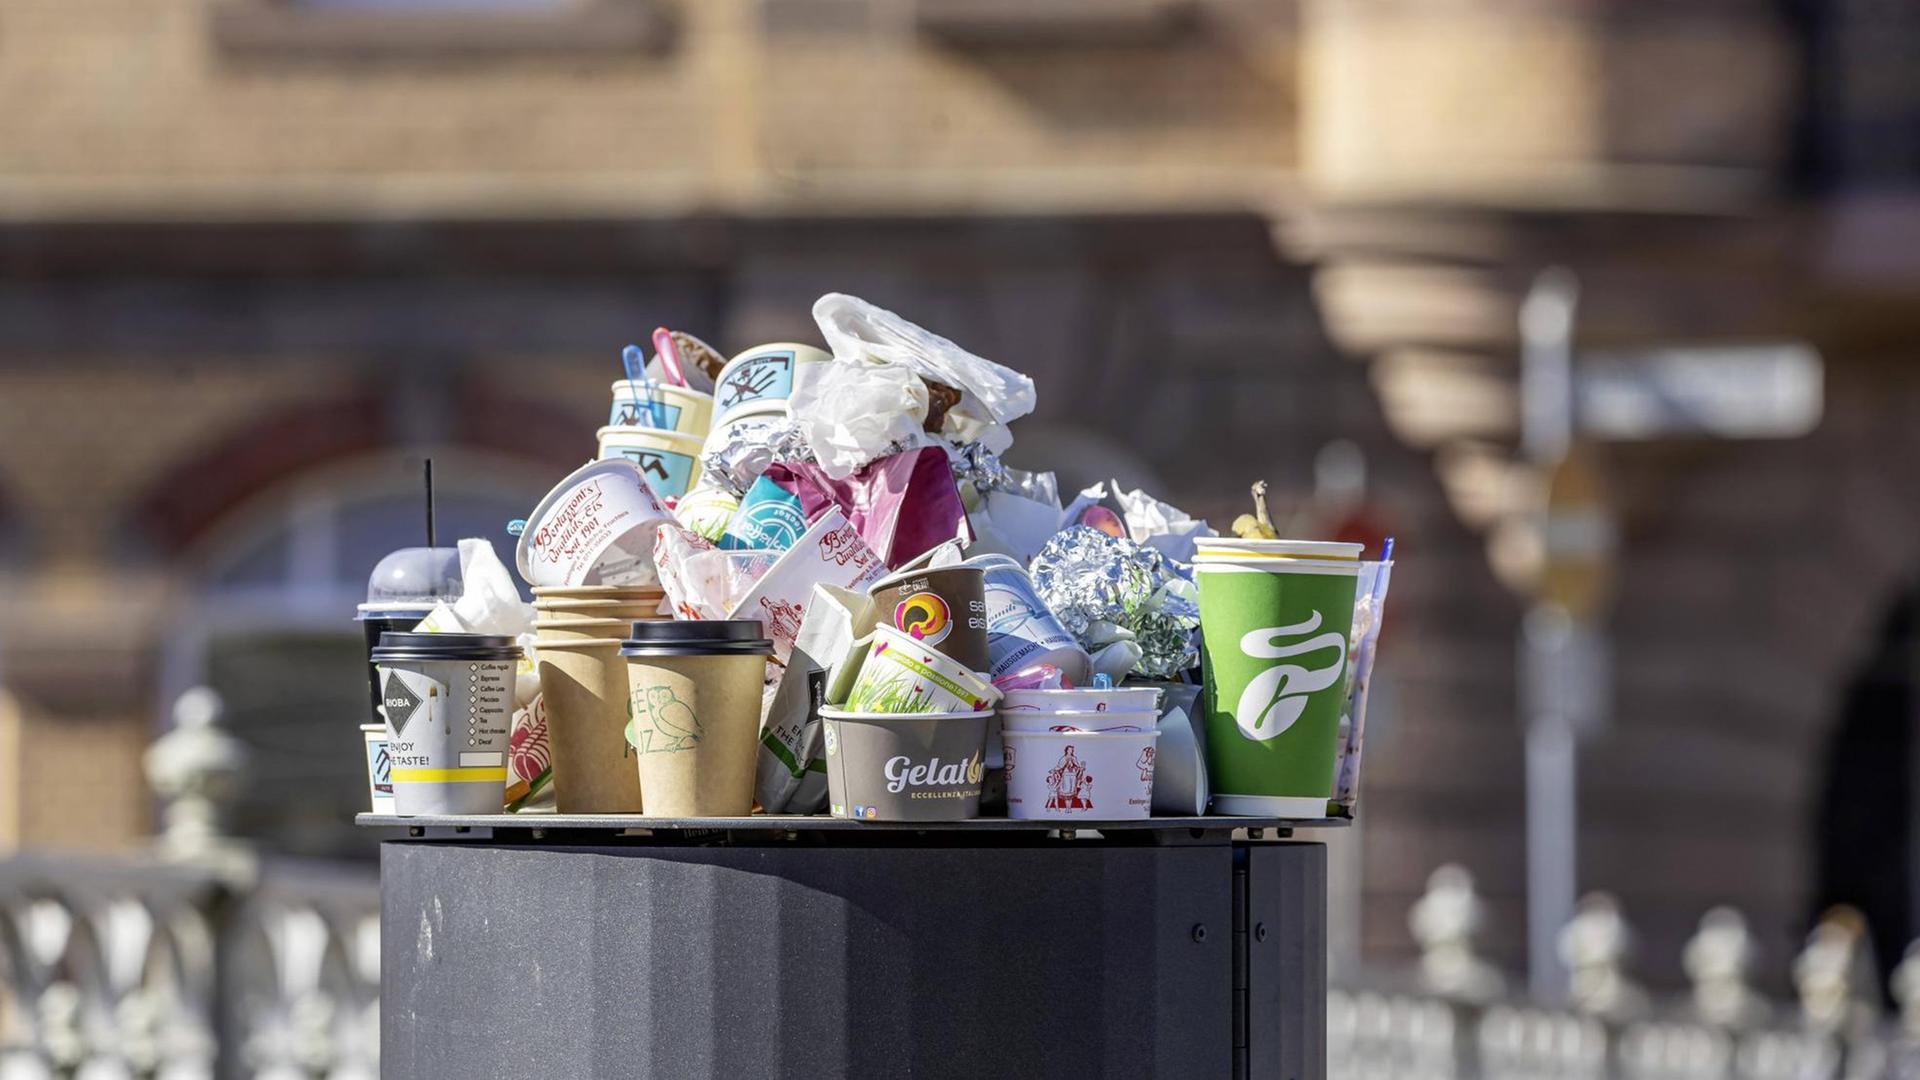 Take-away statt Restaurantbesuch. Der Außer-Haus-Verkauf während der Corona-Krise lässt die Müllberge in den Städten wachsen.